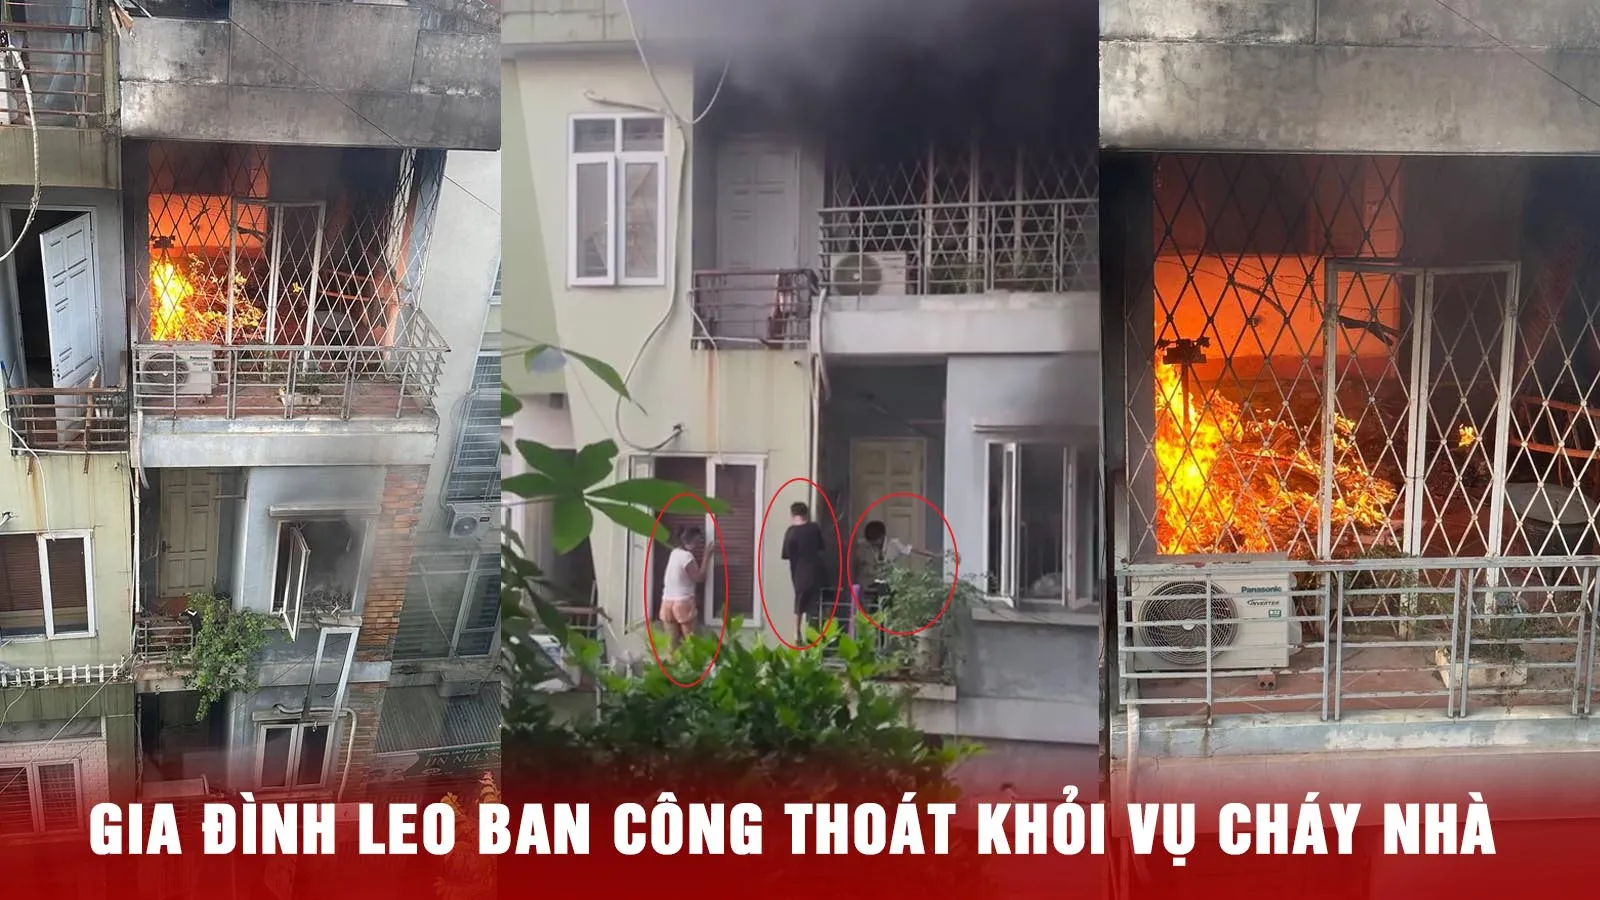 Hà Nội: Cháy nhà lúc rạng sáng, cả gia đình leo ban công thoát thân